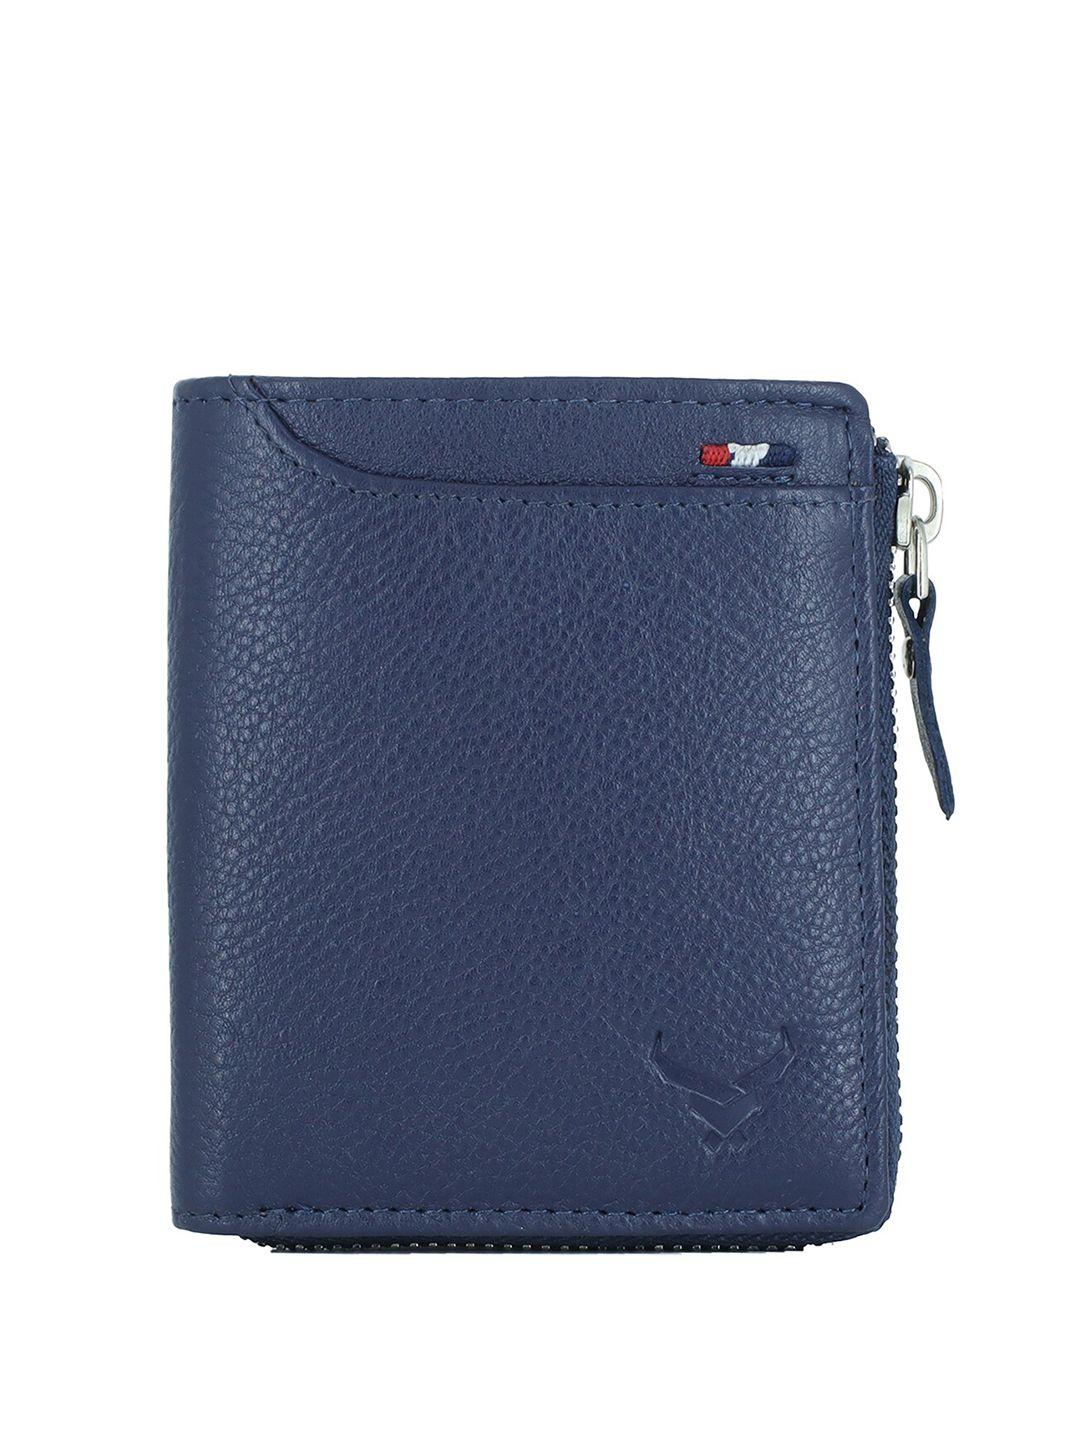 redhorns men leather zip around wallet